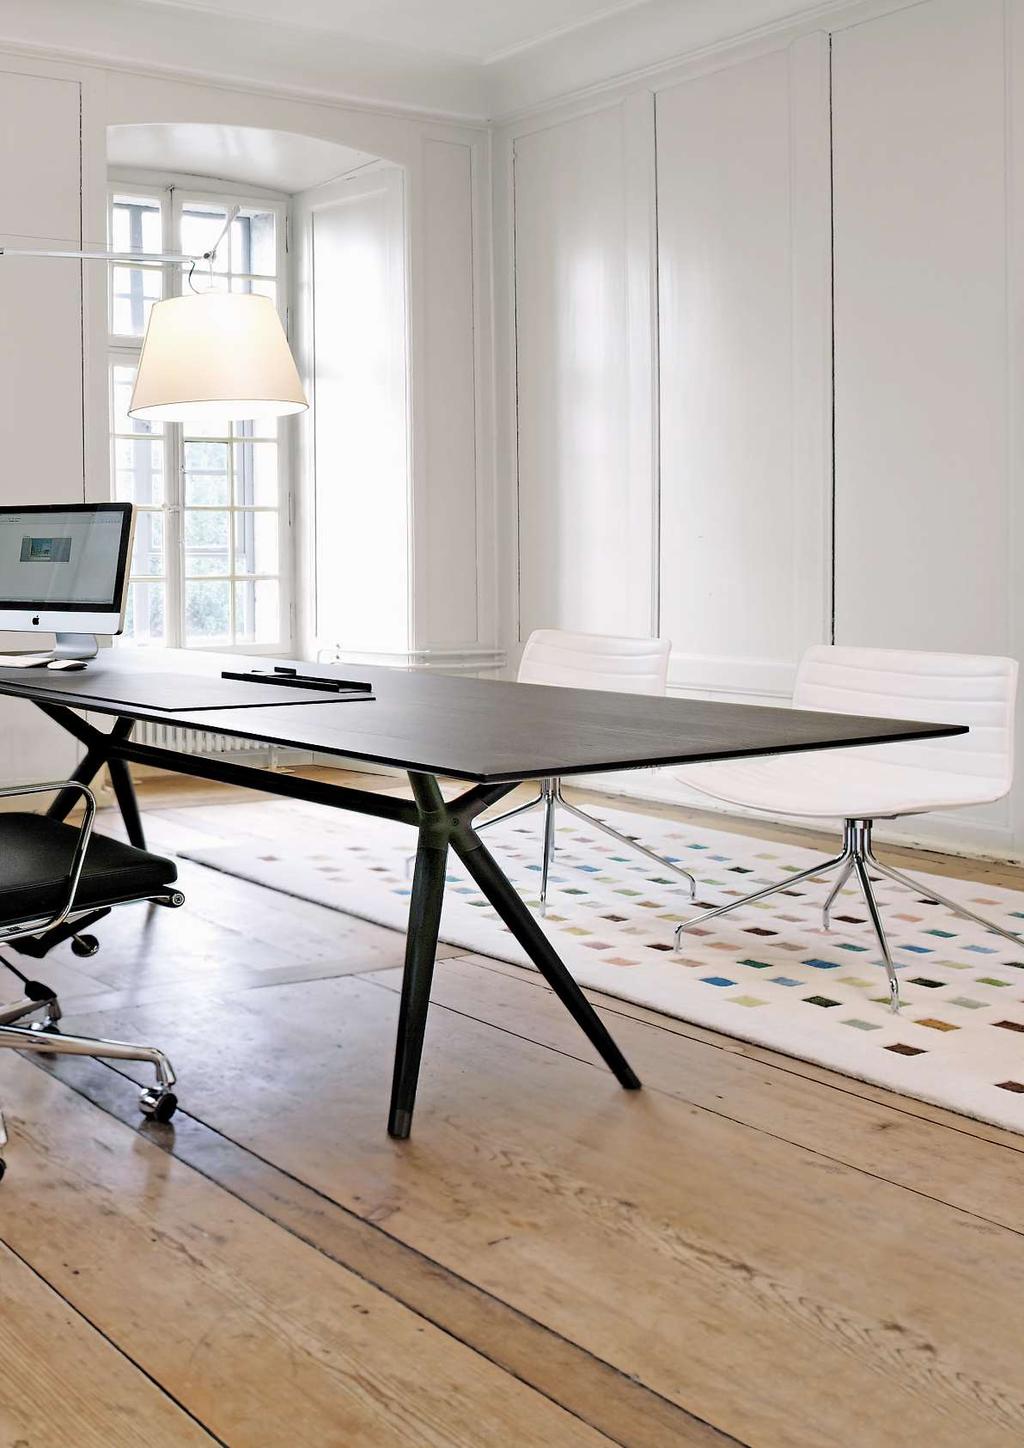 21 X2 Office-Kombination: Tischplatte und Holmen in Kernesche nachtschwarz, gebürstet und gebeizt, Metallteile in Rost metallic lackiert.